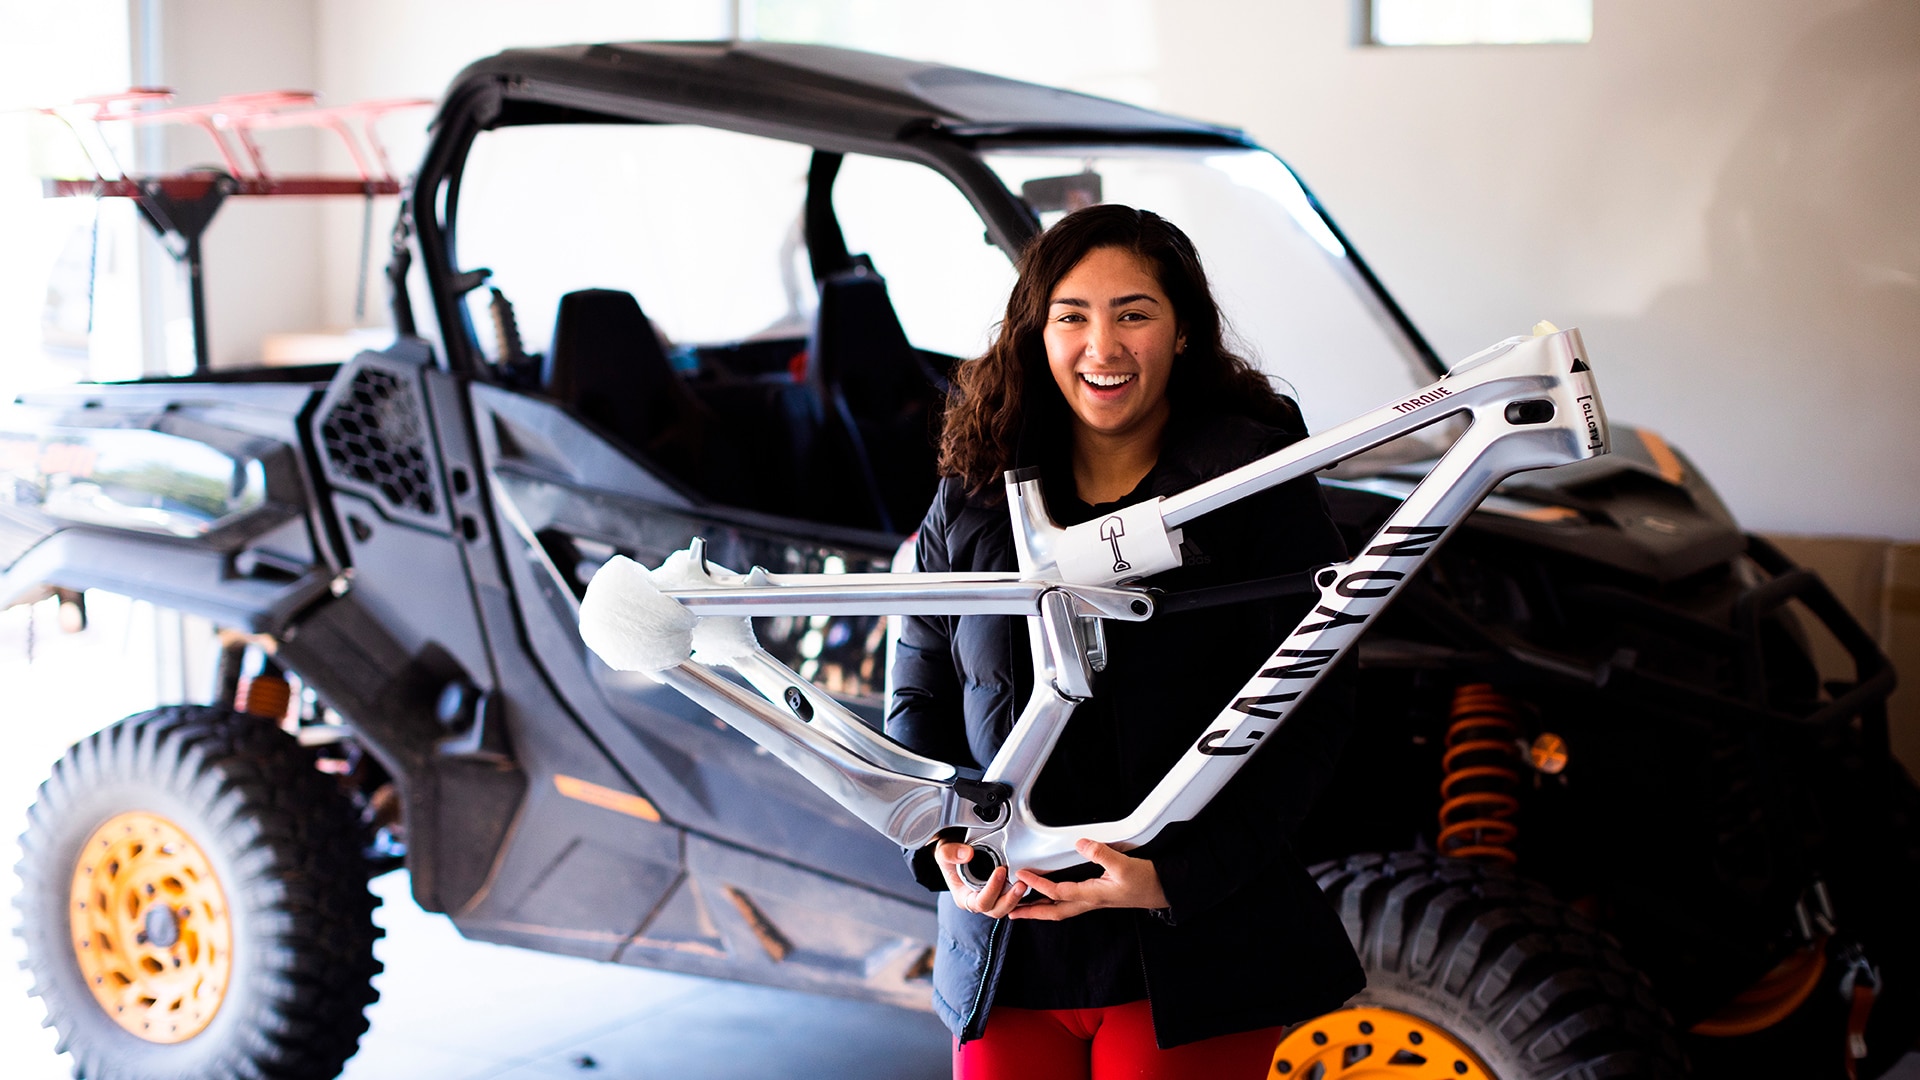 Samantha Soriano sonriendo, apoyada en un Can-Am Commander con detalles en naranja y sosteniendo un cuadro de bicicleta